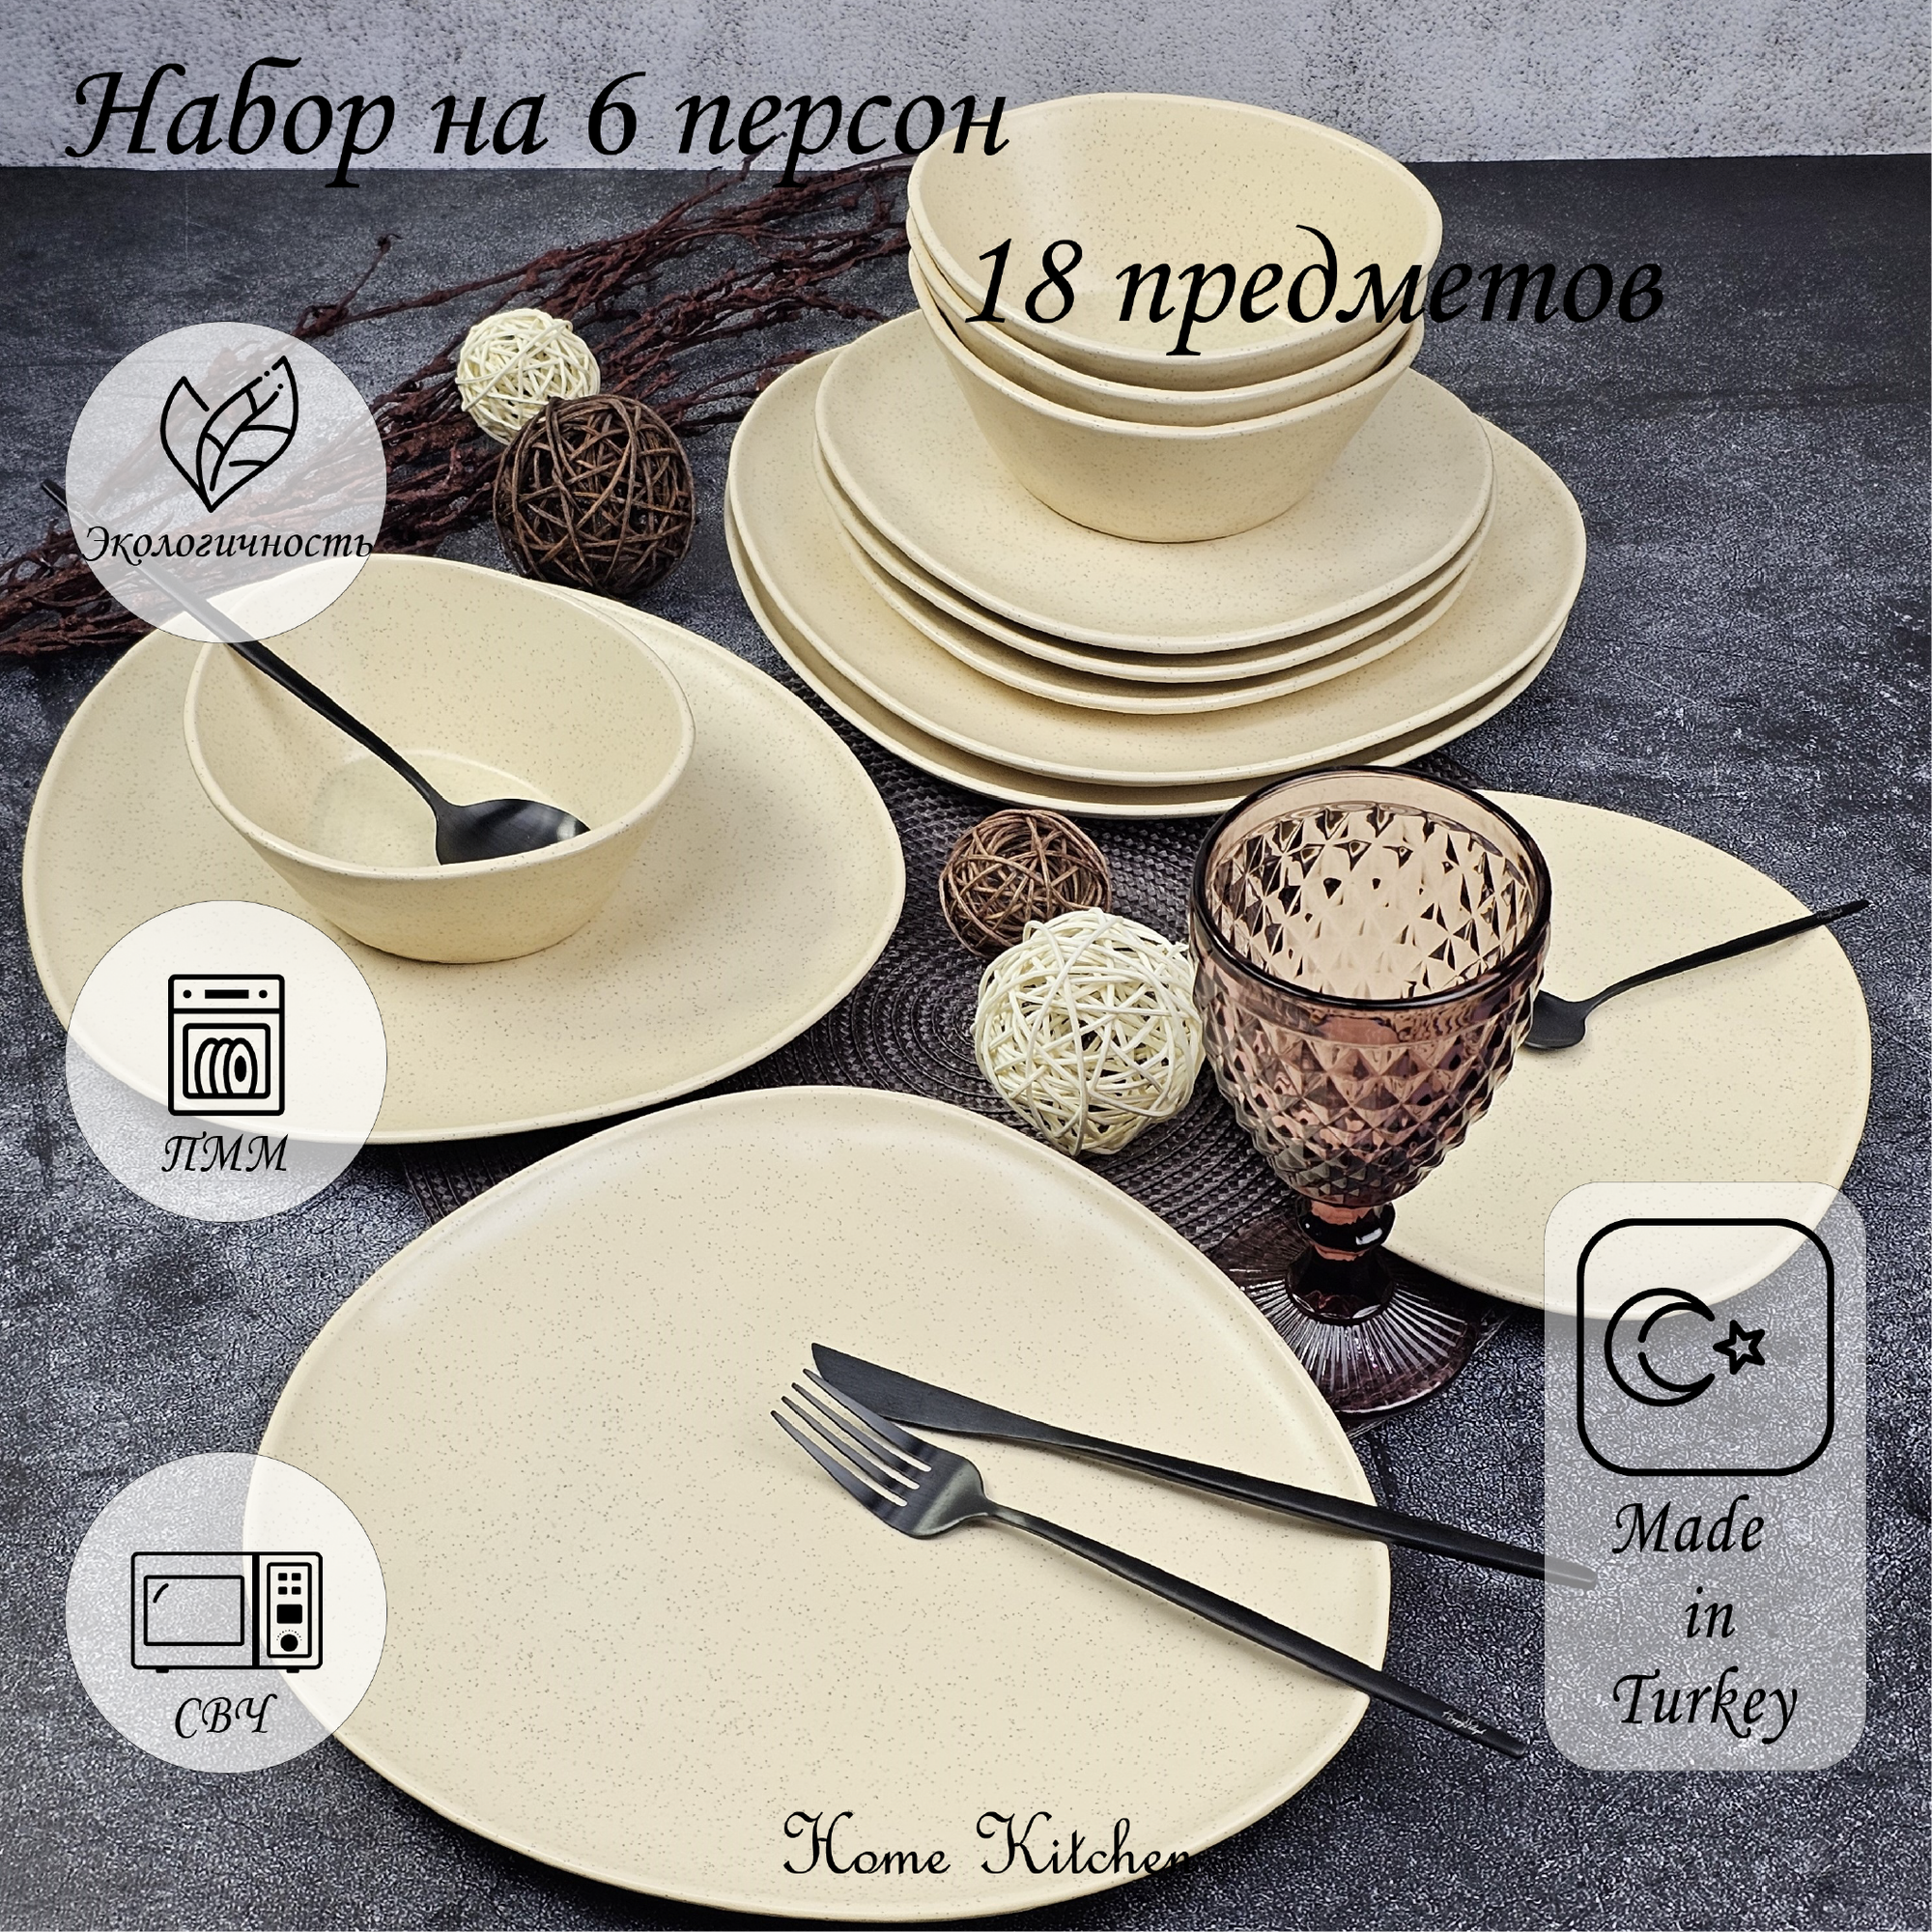 Набор столовой посуды бренда KERAMIKA серии "TRIOR" на 6 персон (18 предметов).